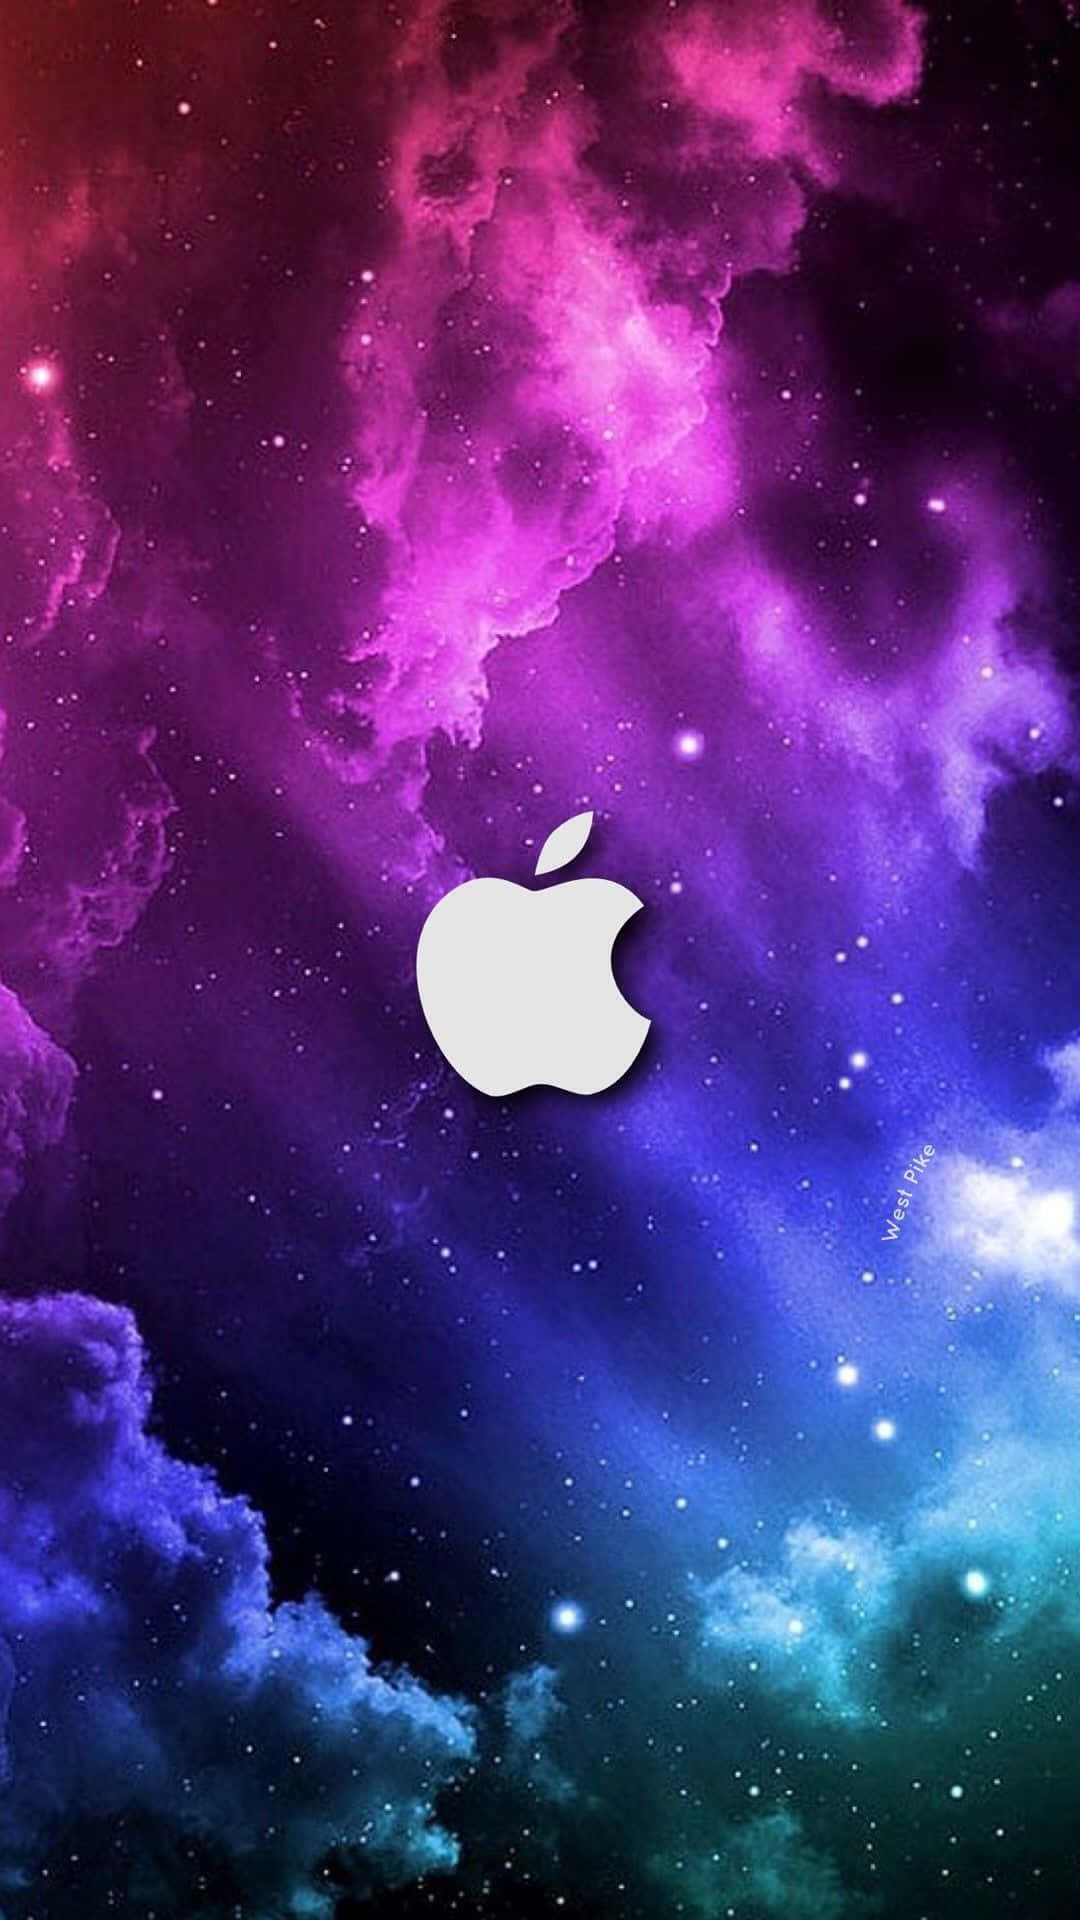 Sfondoper Computer O Cellulare: Splendido Cielo Variegato Con Sfumature Di Colore, Meravigliosa Mela Di Apple In Alta Definizione Per Iphone. Sfondo